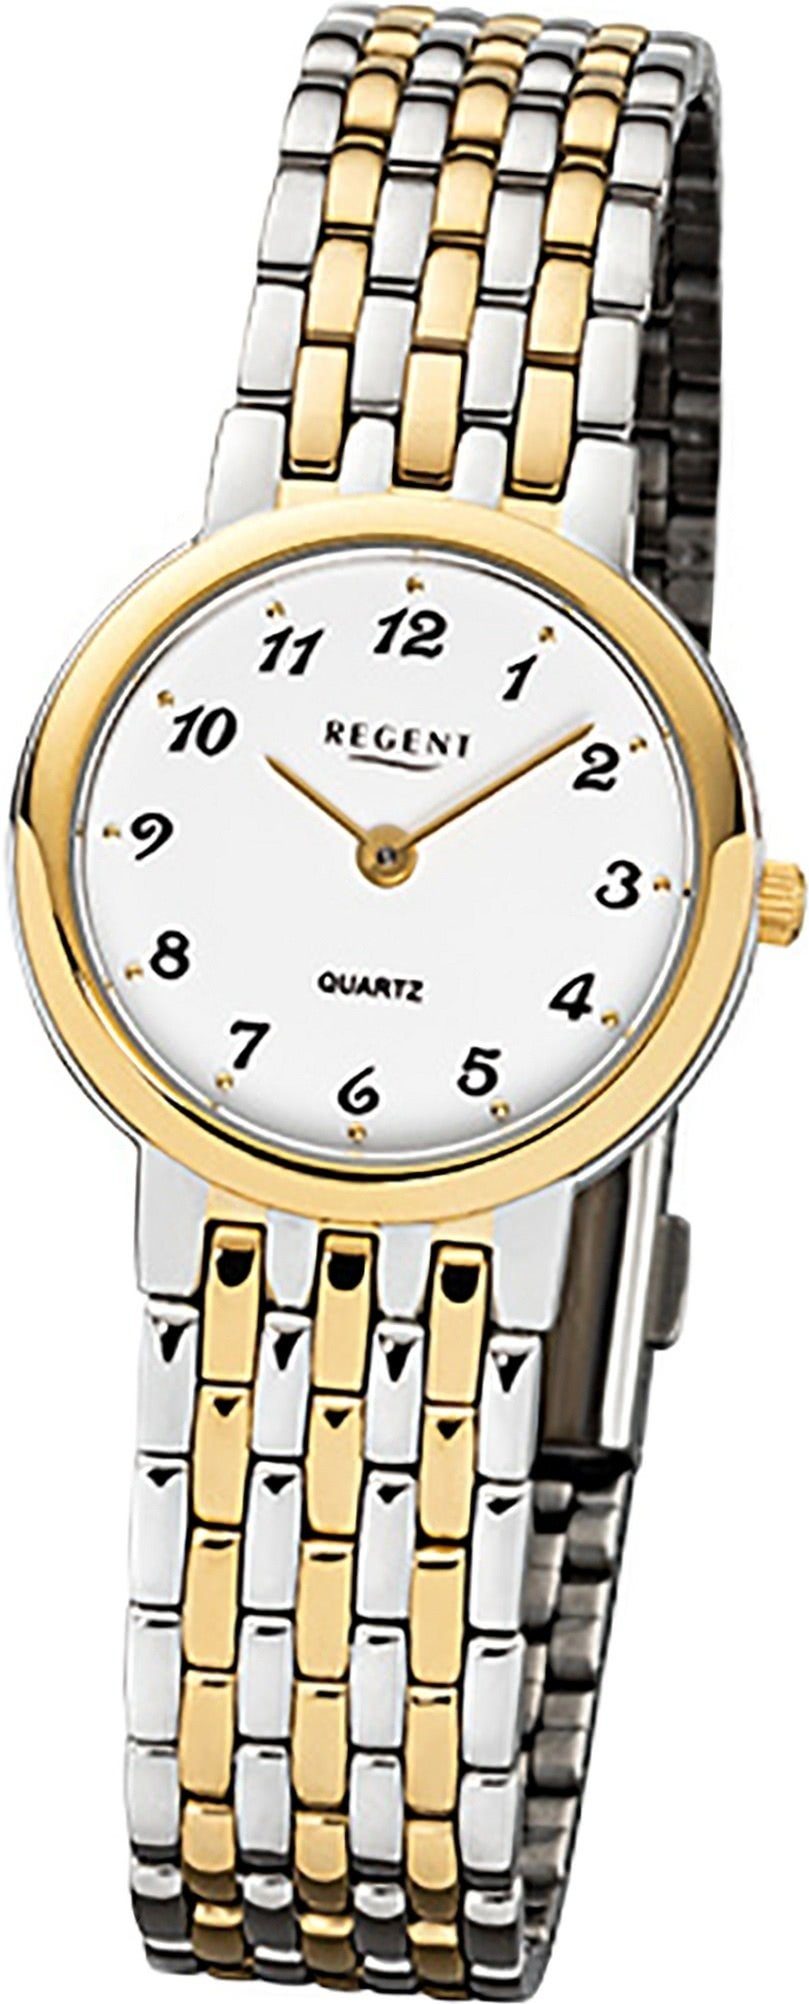 Regent Quarzuhr Regent Edelstahl Damen Uhr F-1048 Quarz, Damenuhr Edelstahlarmband silber, gold, rundes Gehäuse, klein (26mm)